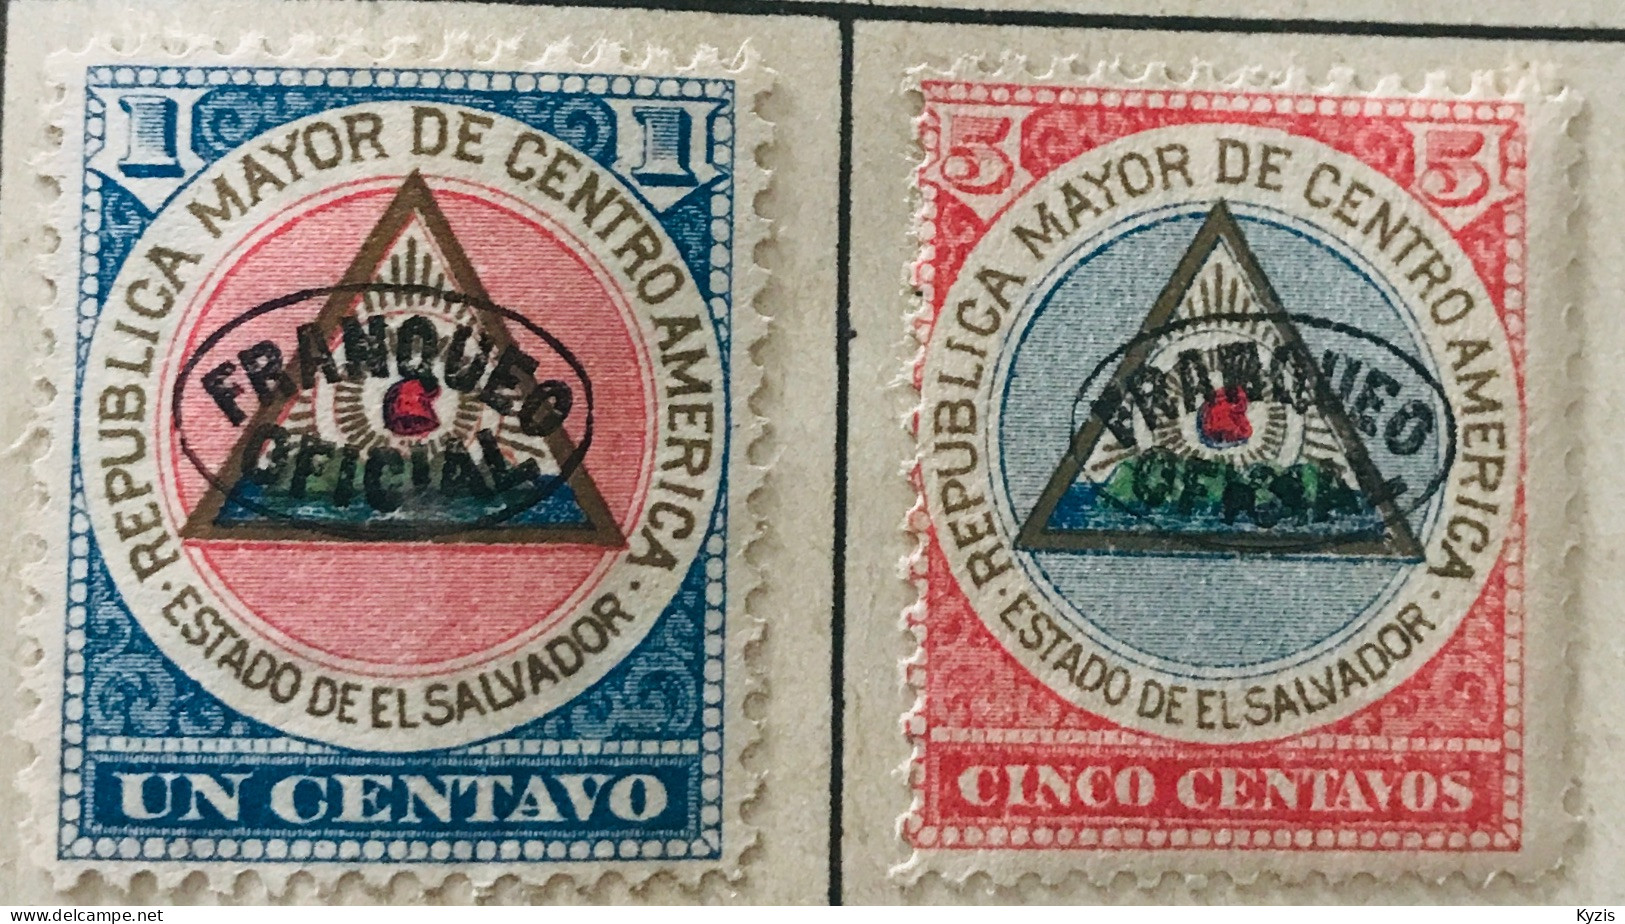 El Salvador, 1900, Officiel - Armoiries, Surcharges,1c/5c - MH - El Salvador